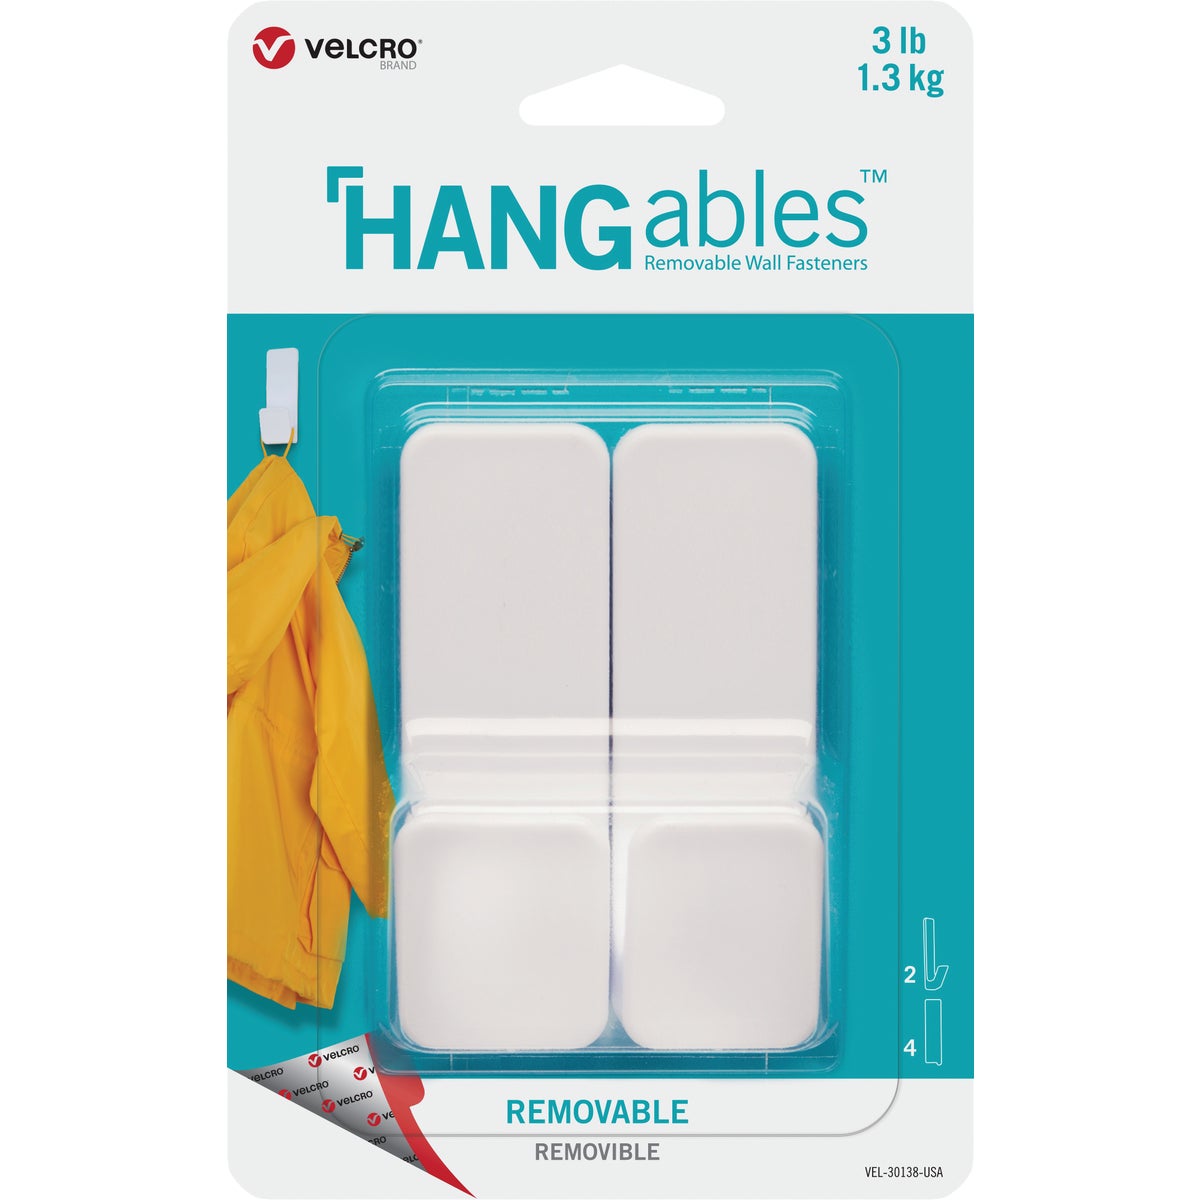 Hangables VELCRO Brand VEL-30138-USA